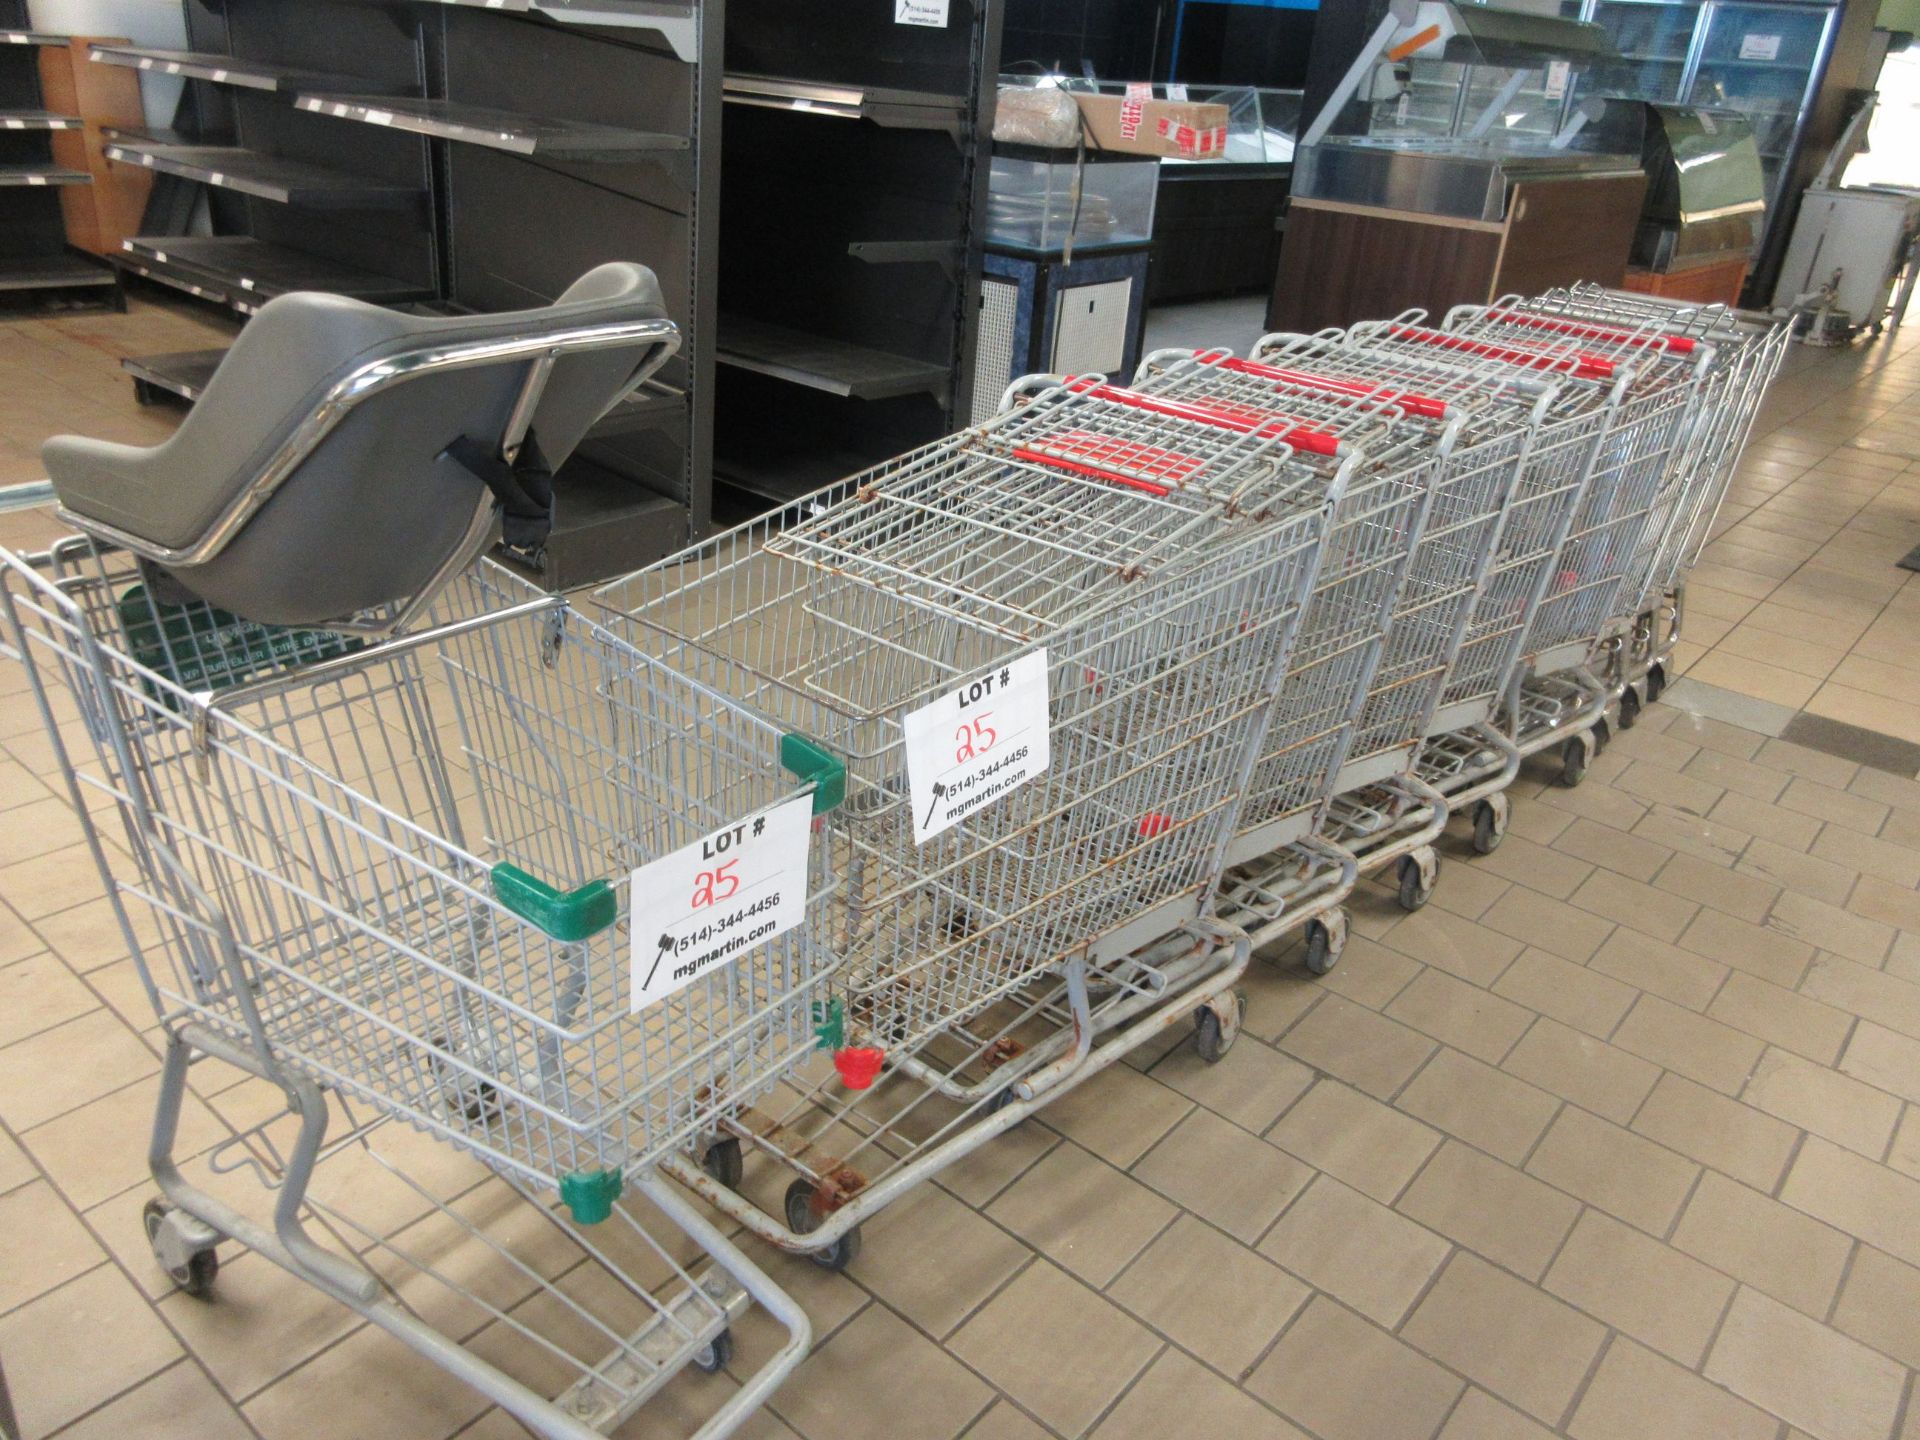 Shopping carts (9)